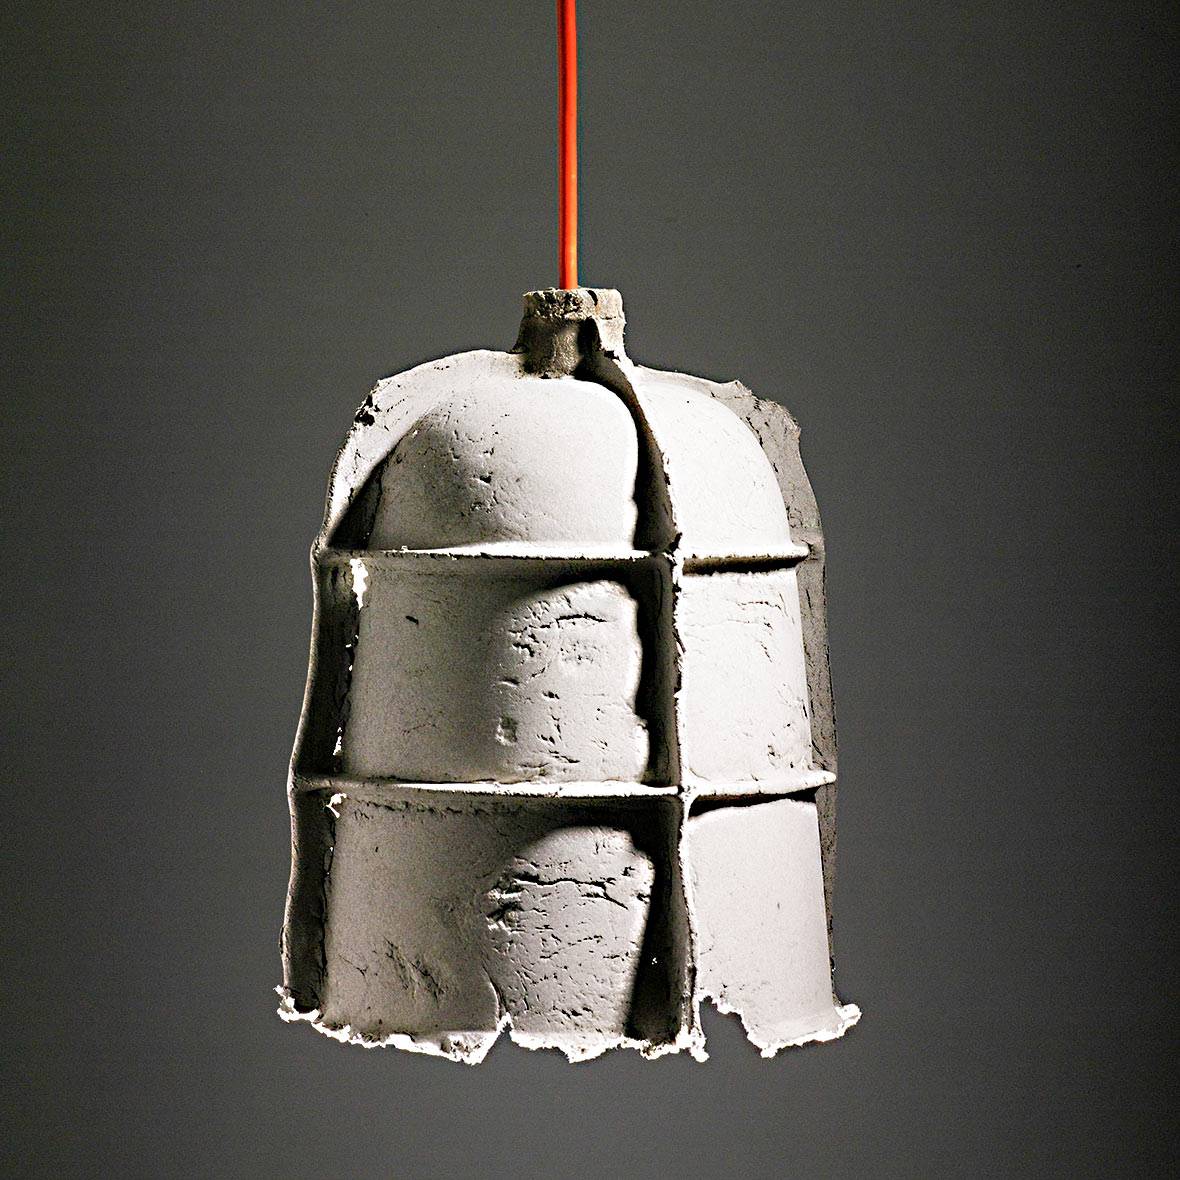 50 фото светильников в индустриальном стиле | онлайн-журнал о ремонте и дизайне